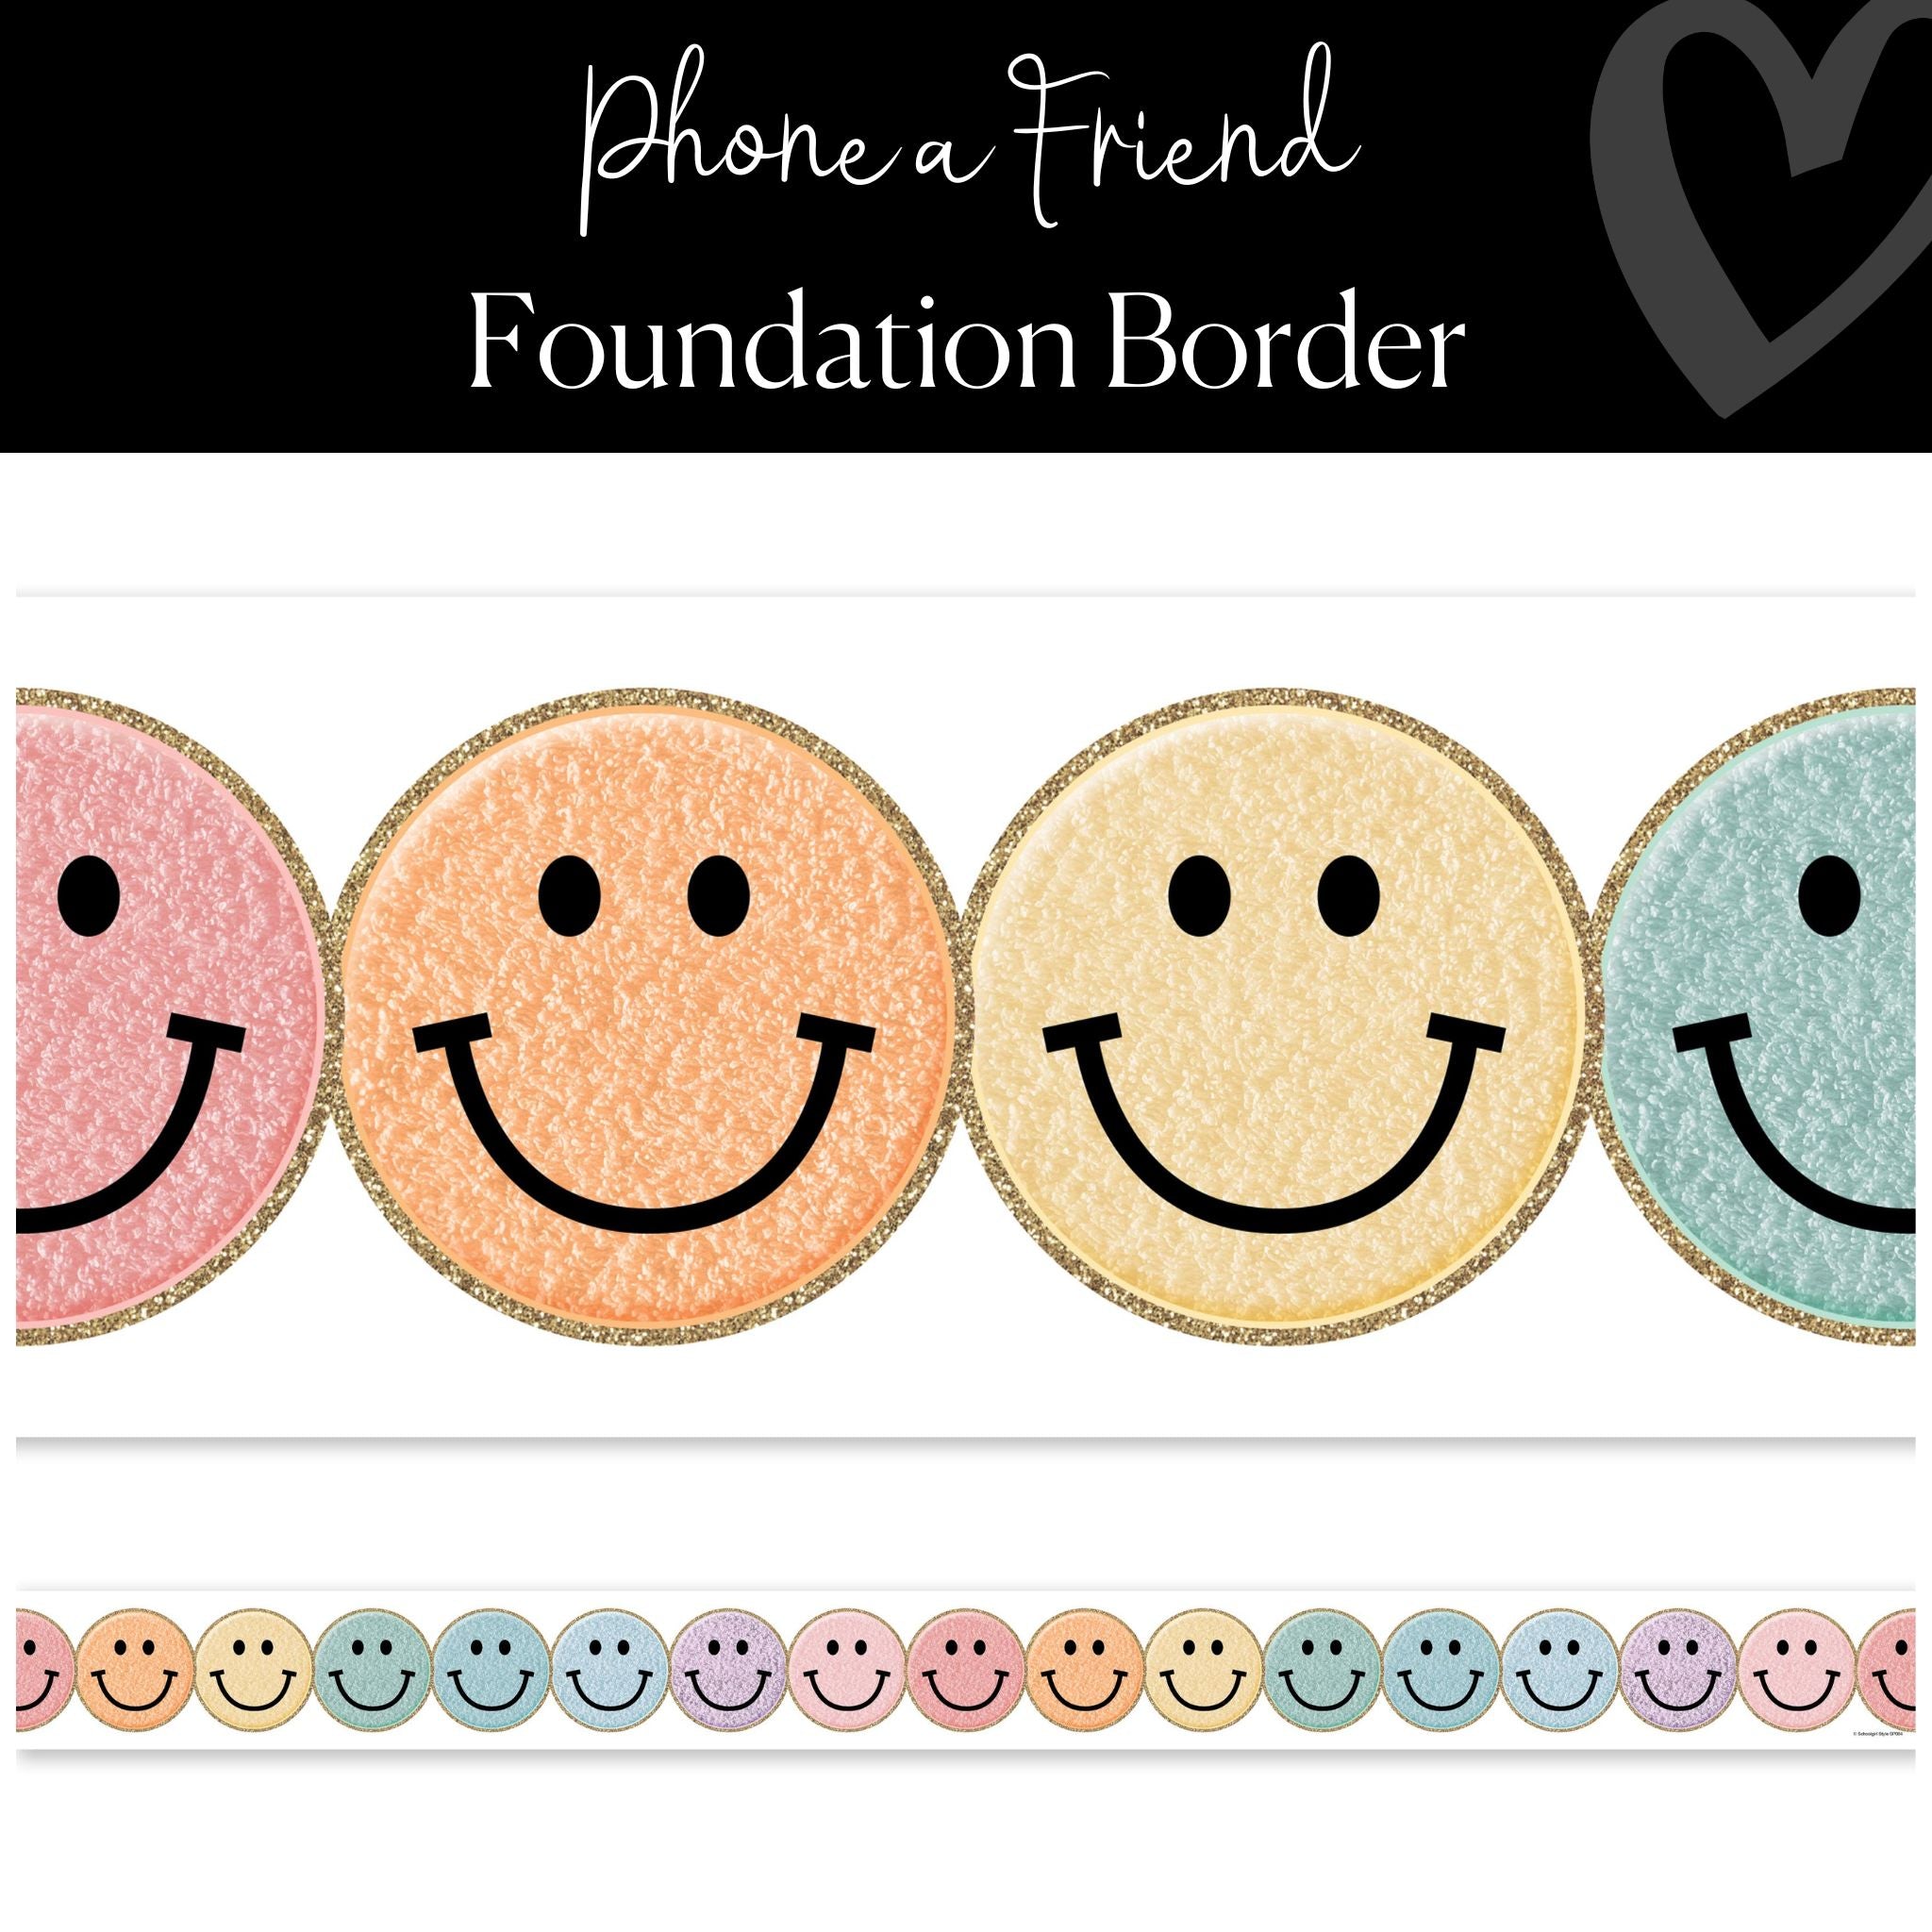 Rainbow Smiley Face Border, Phone a Friend Foundation Border